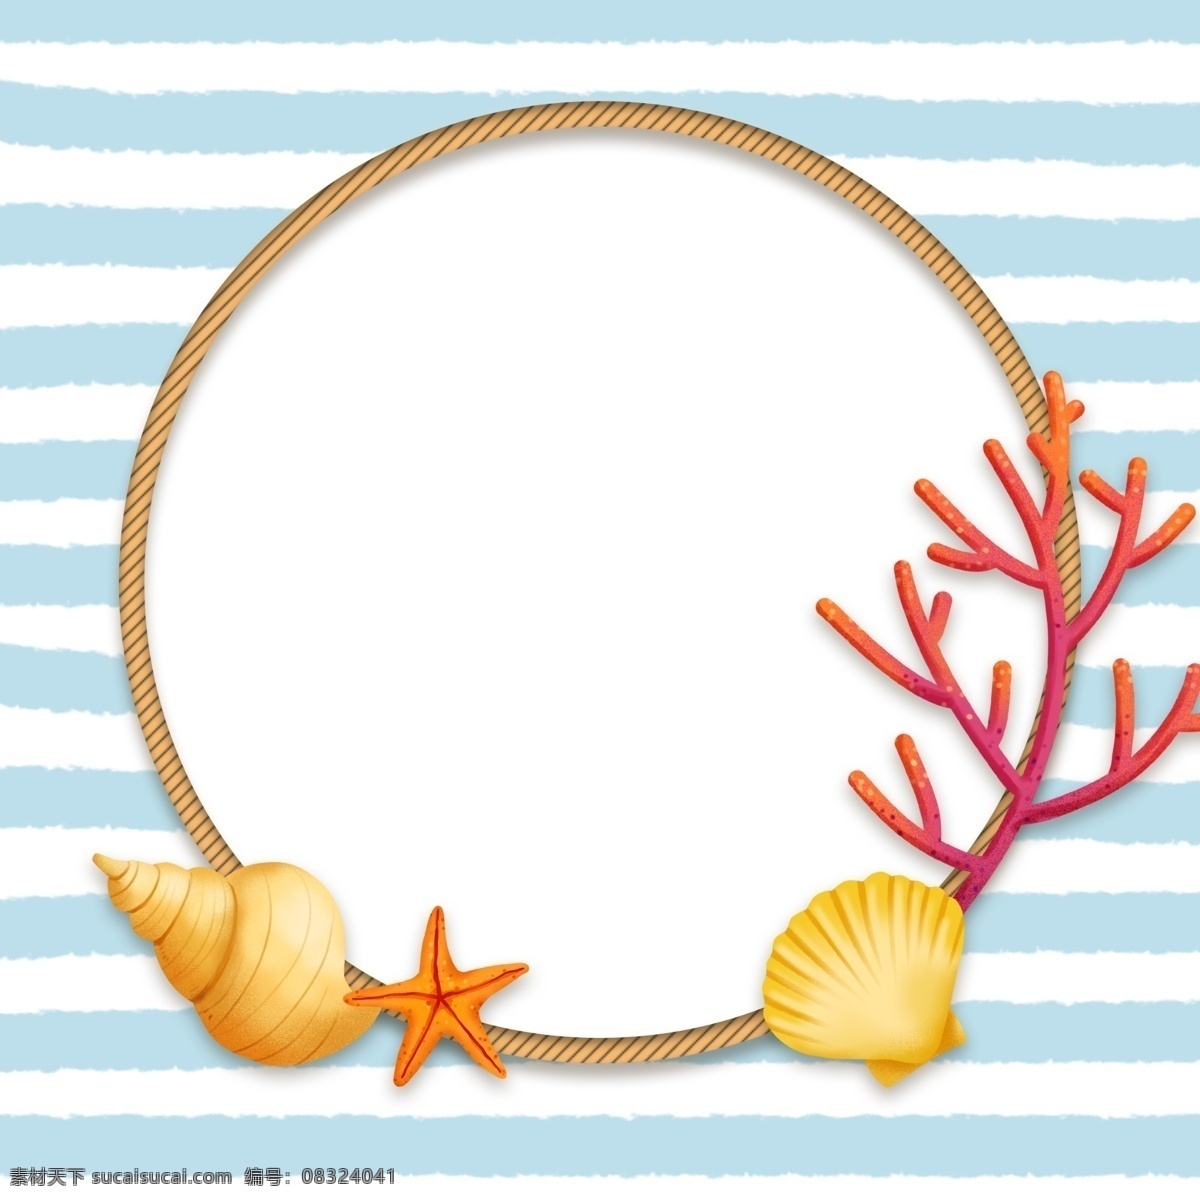 夏天 蓝色 海星 边框 贝壳 夏季 黄色 条纹 夏季边框 海螺 珊瑚 绳索